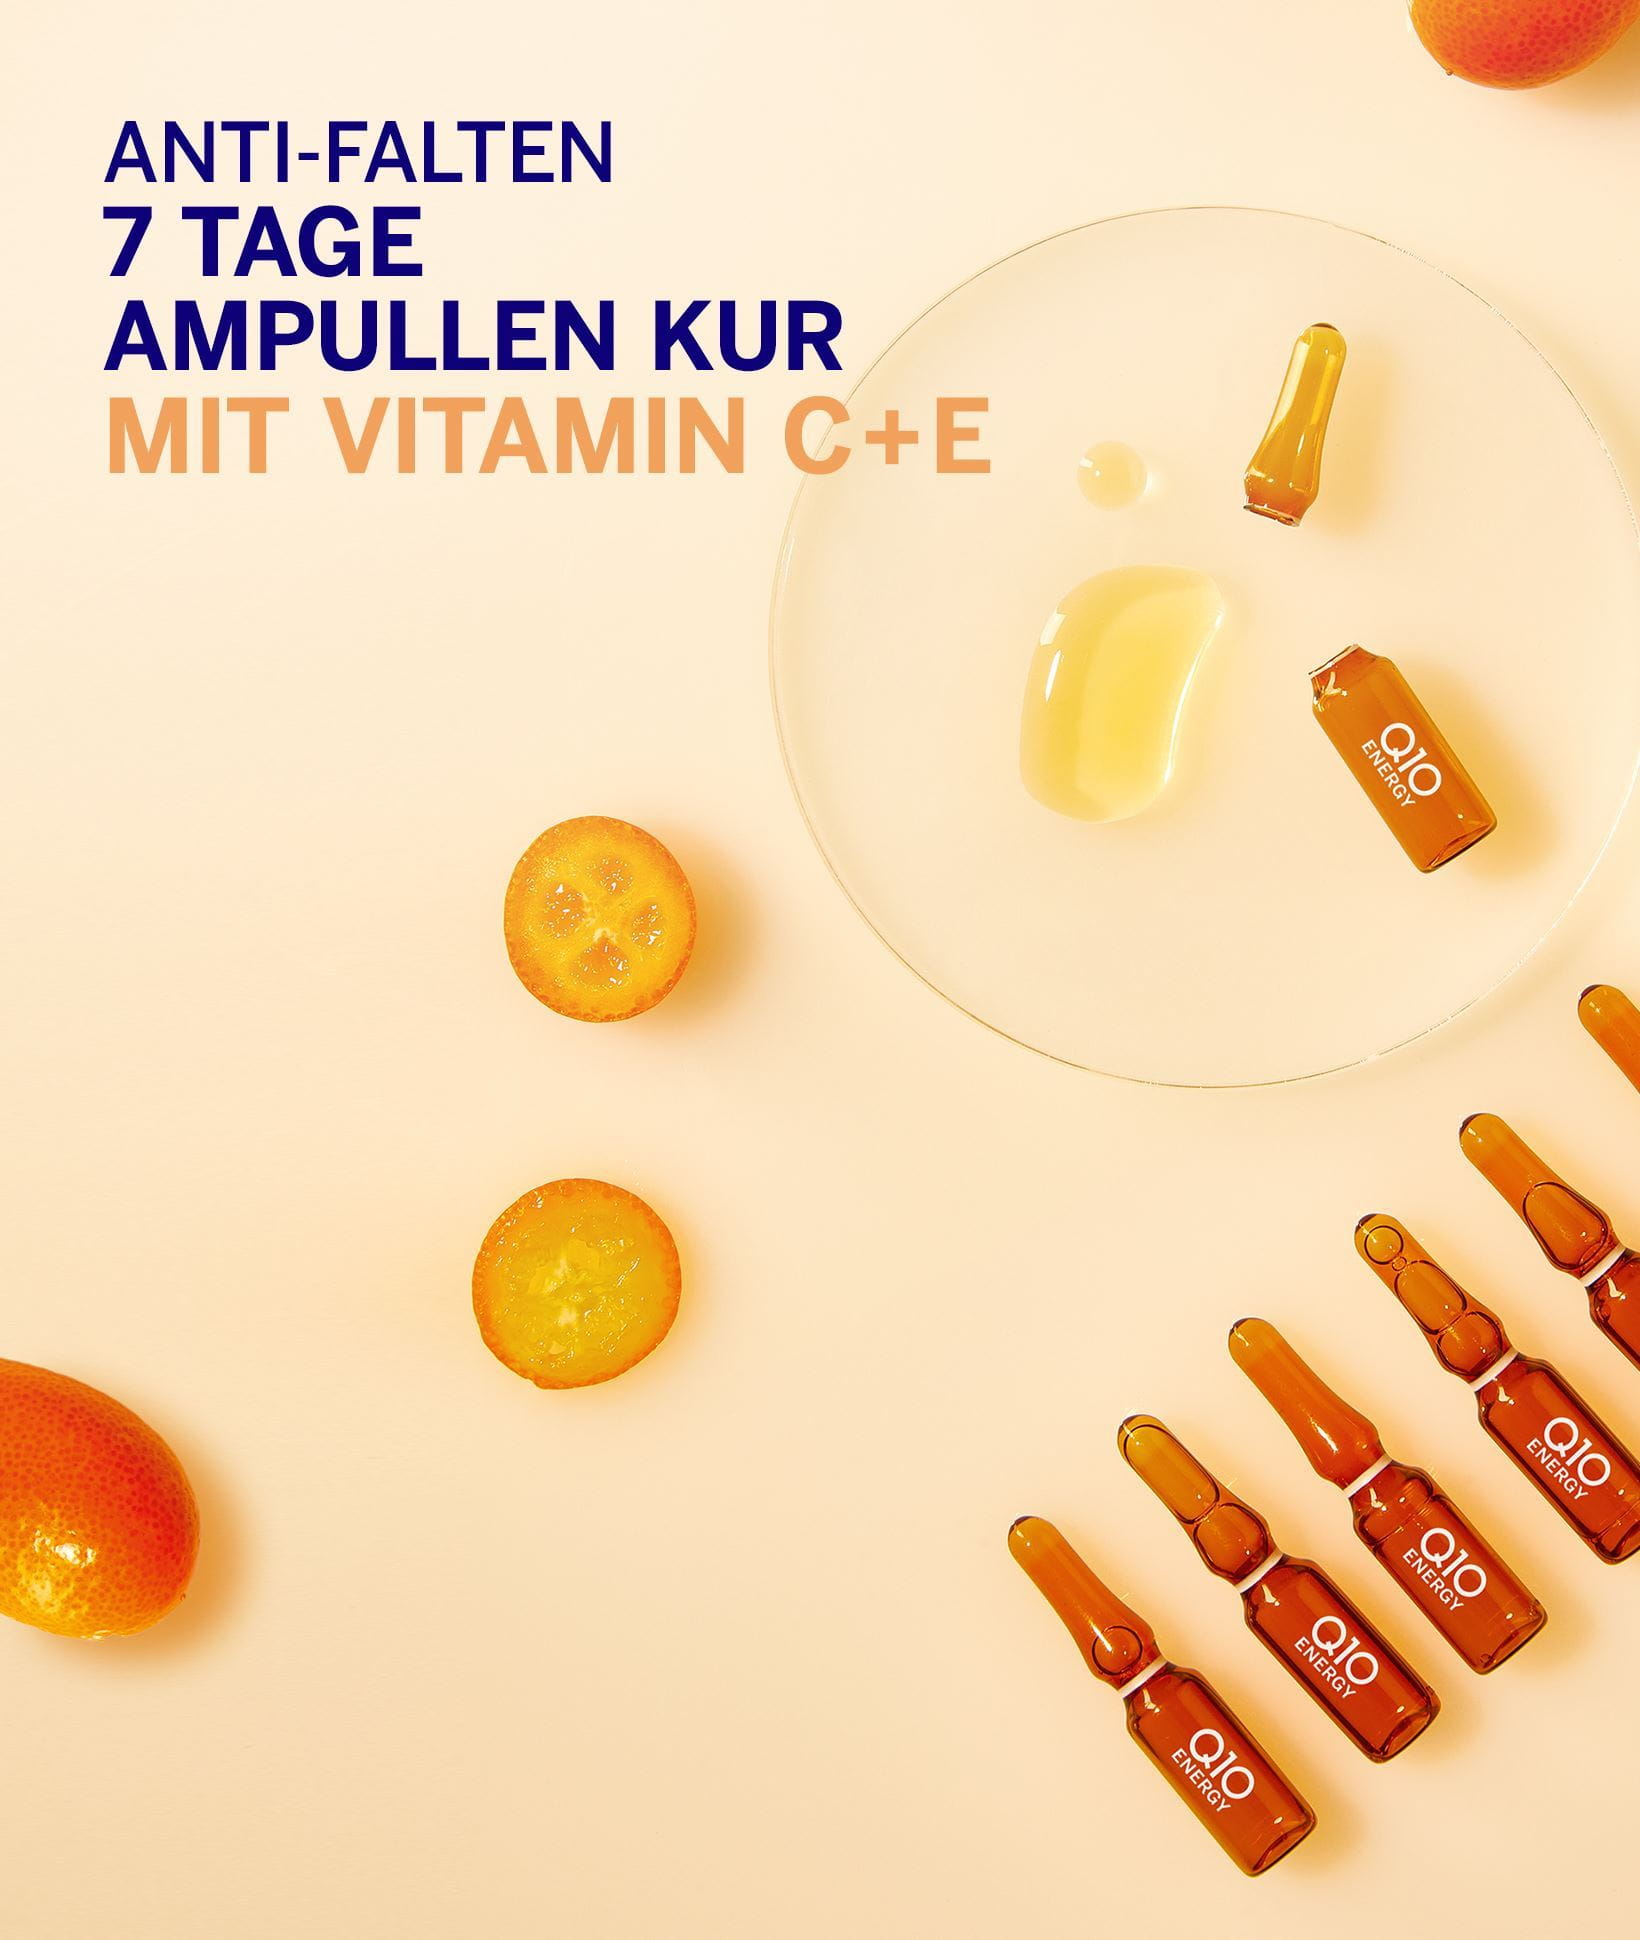 Anti-Falten 7 Tage Ampullen Kur mit Vitamin C+E